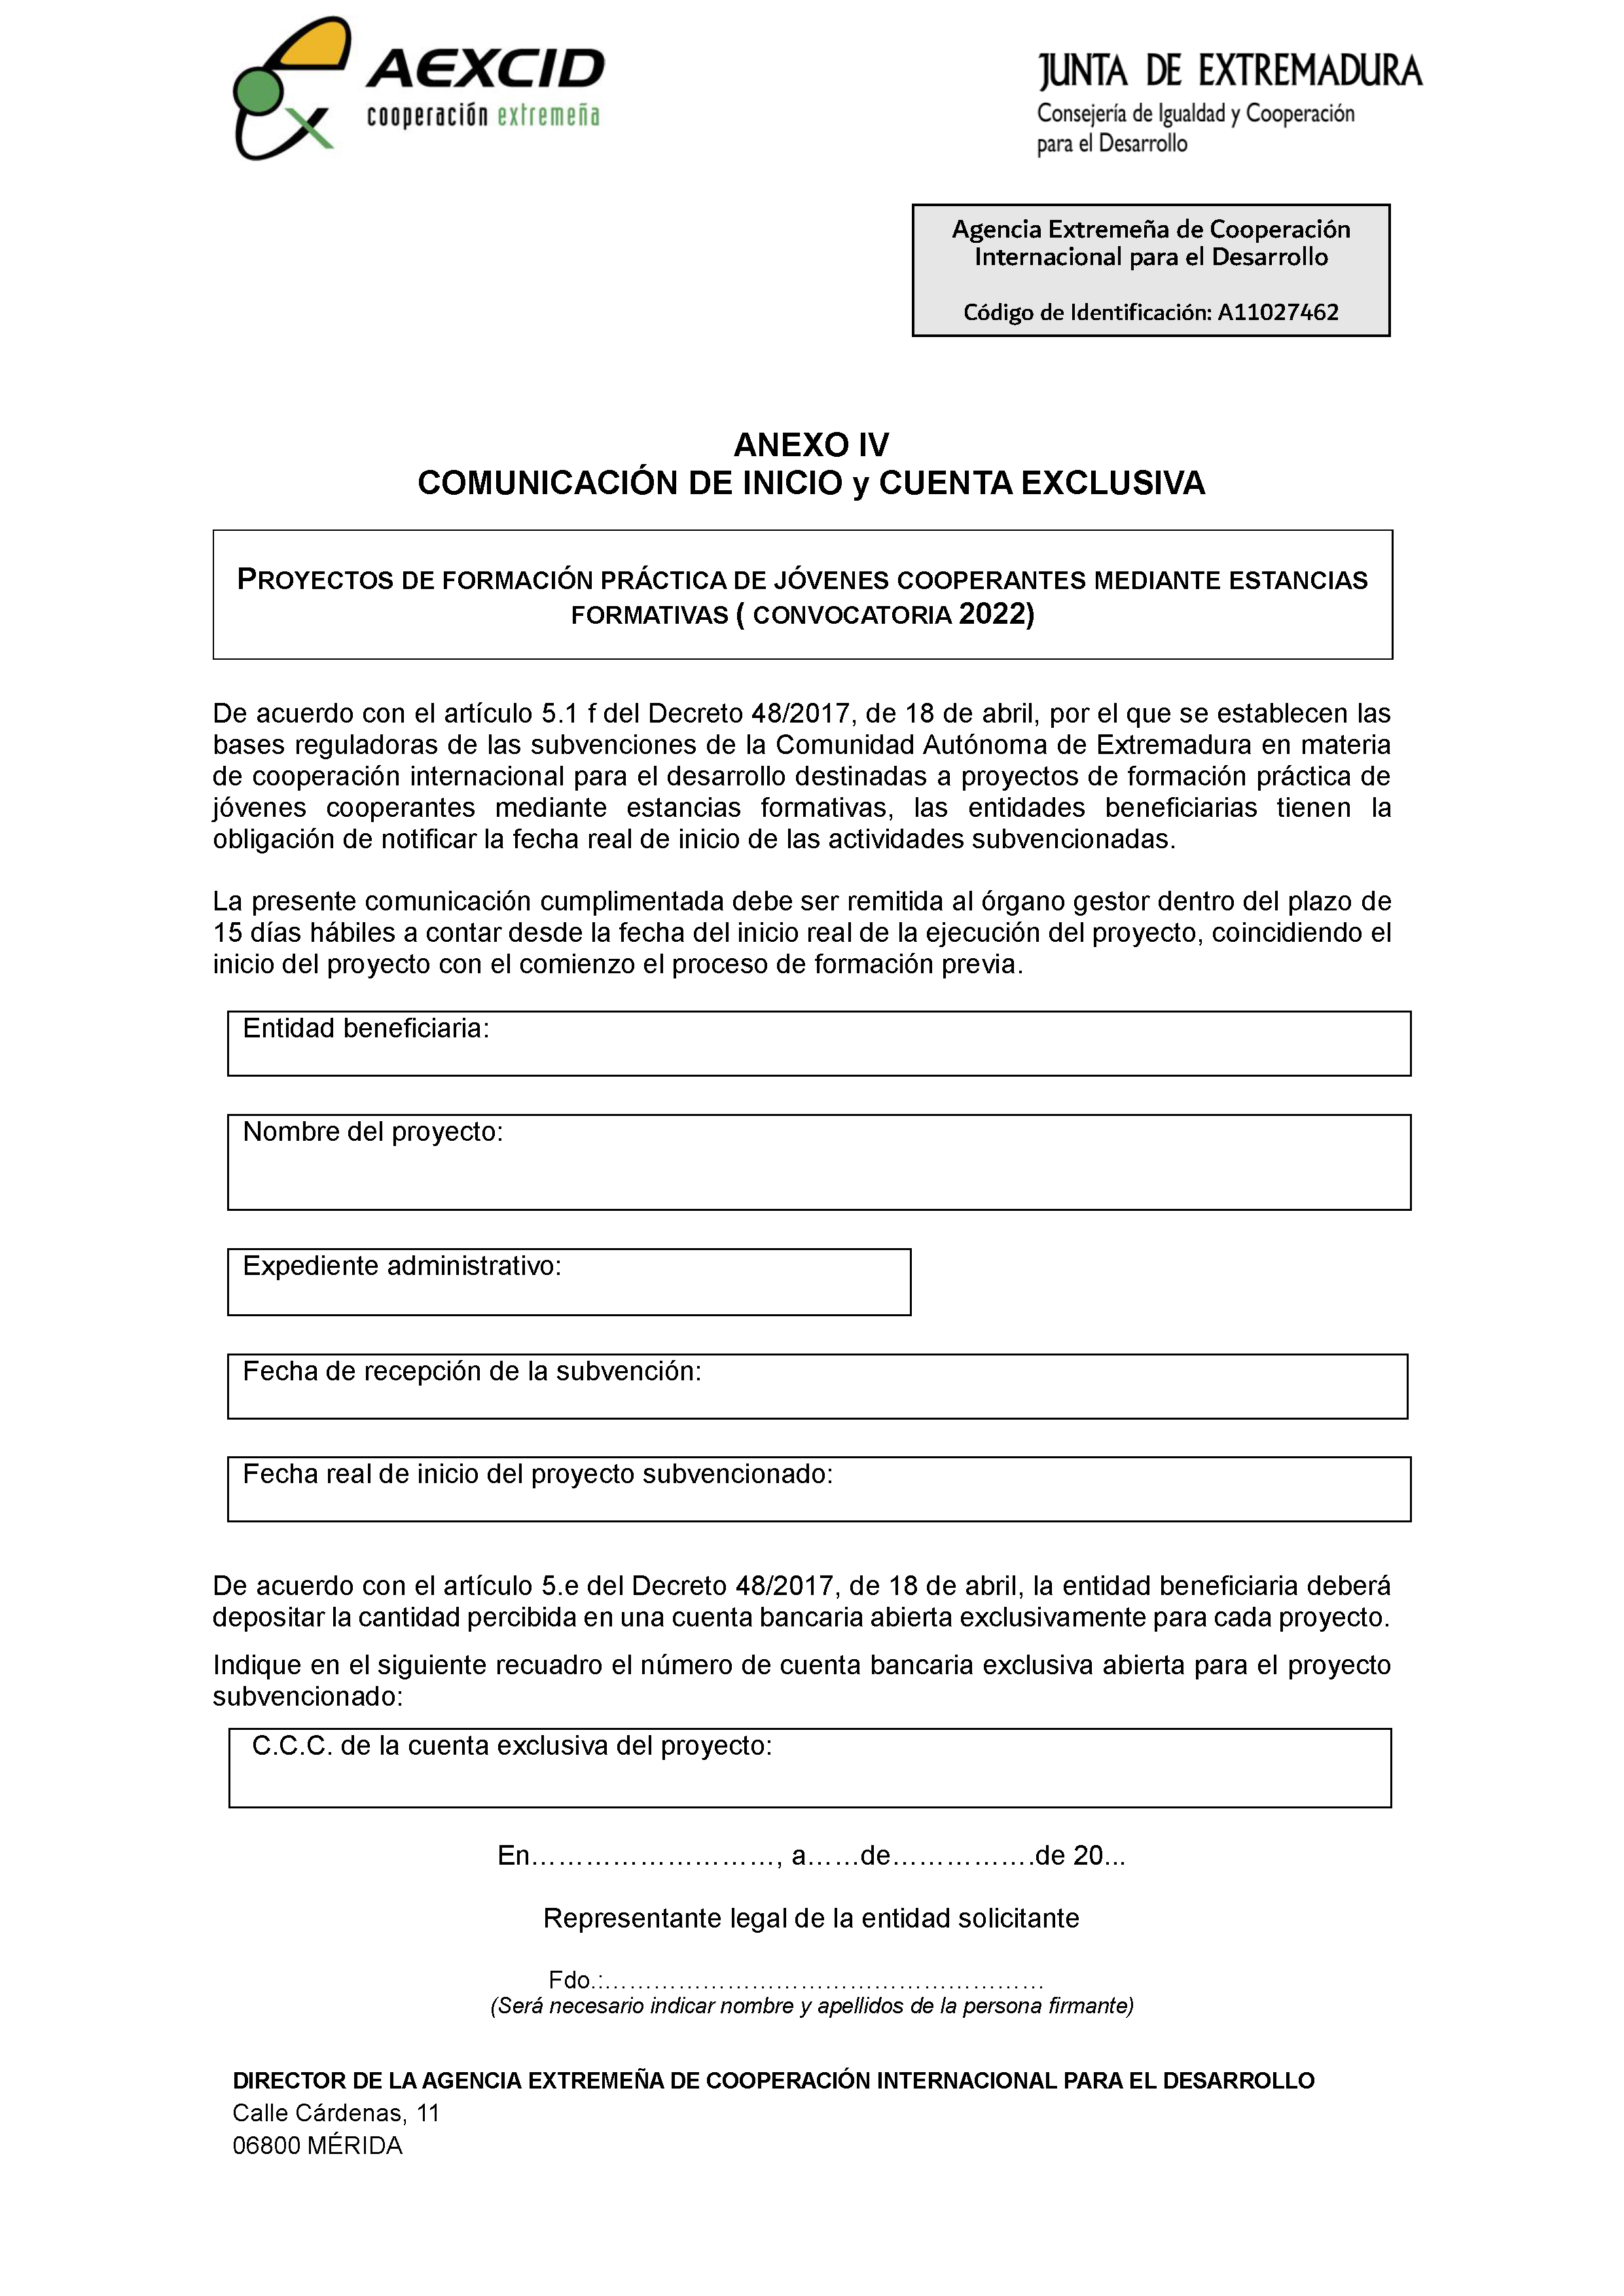 ANEXO IV COMUNICACION DE INICIO Y CUENTA EXCLUSIVA